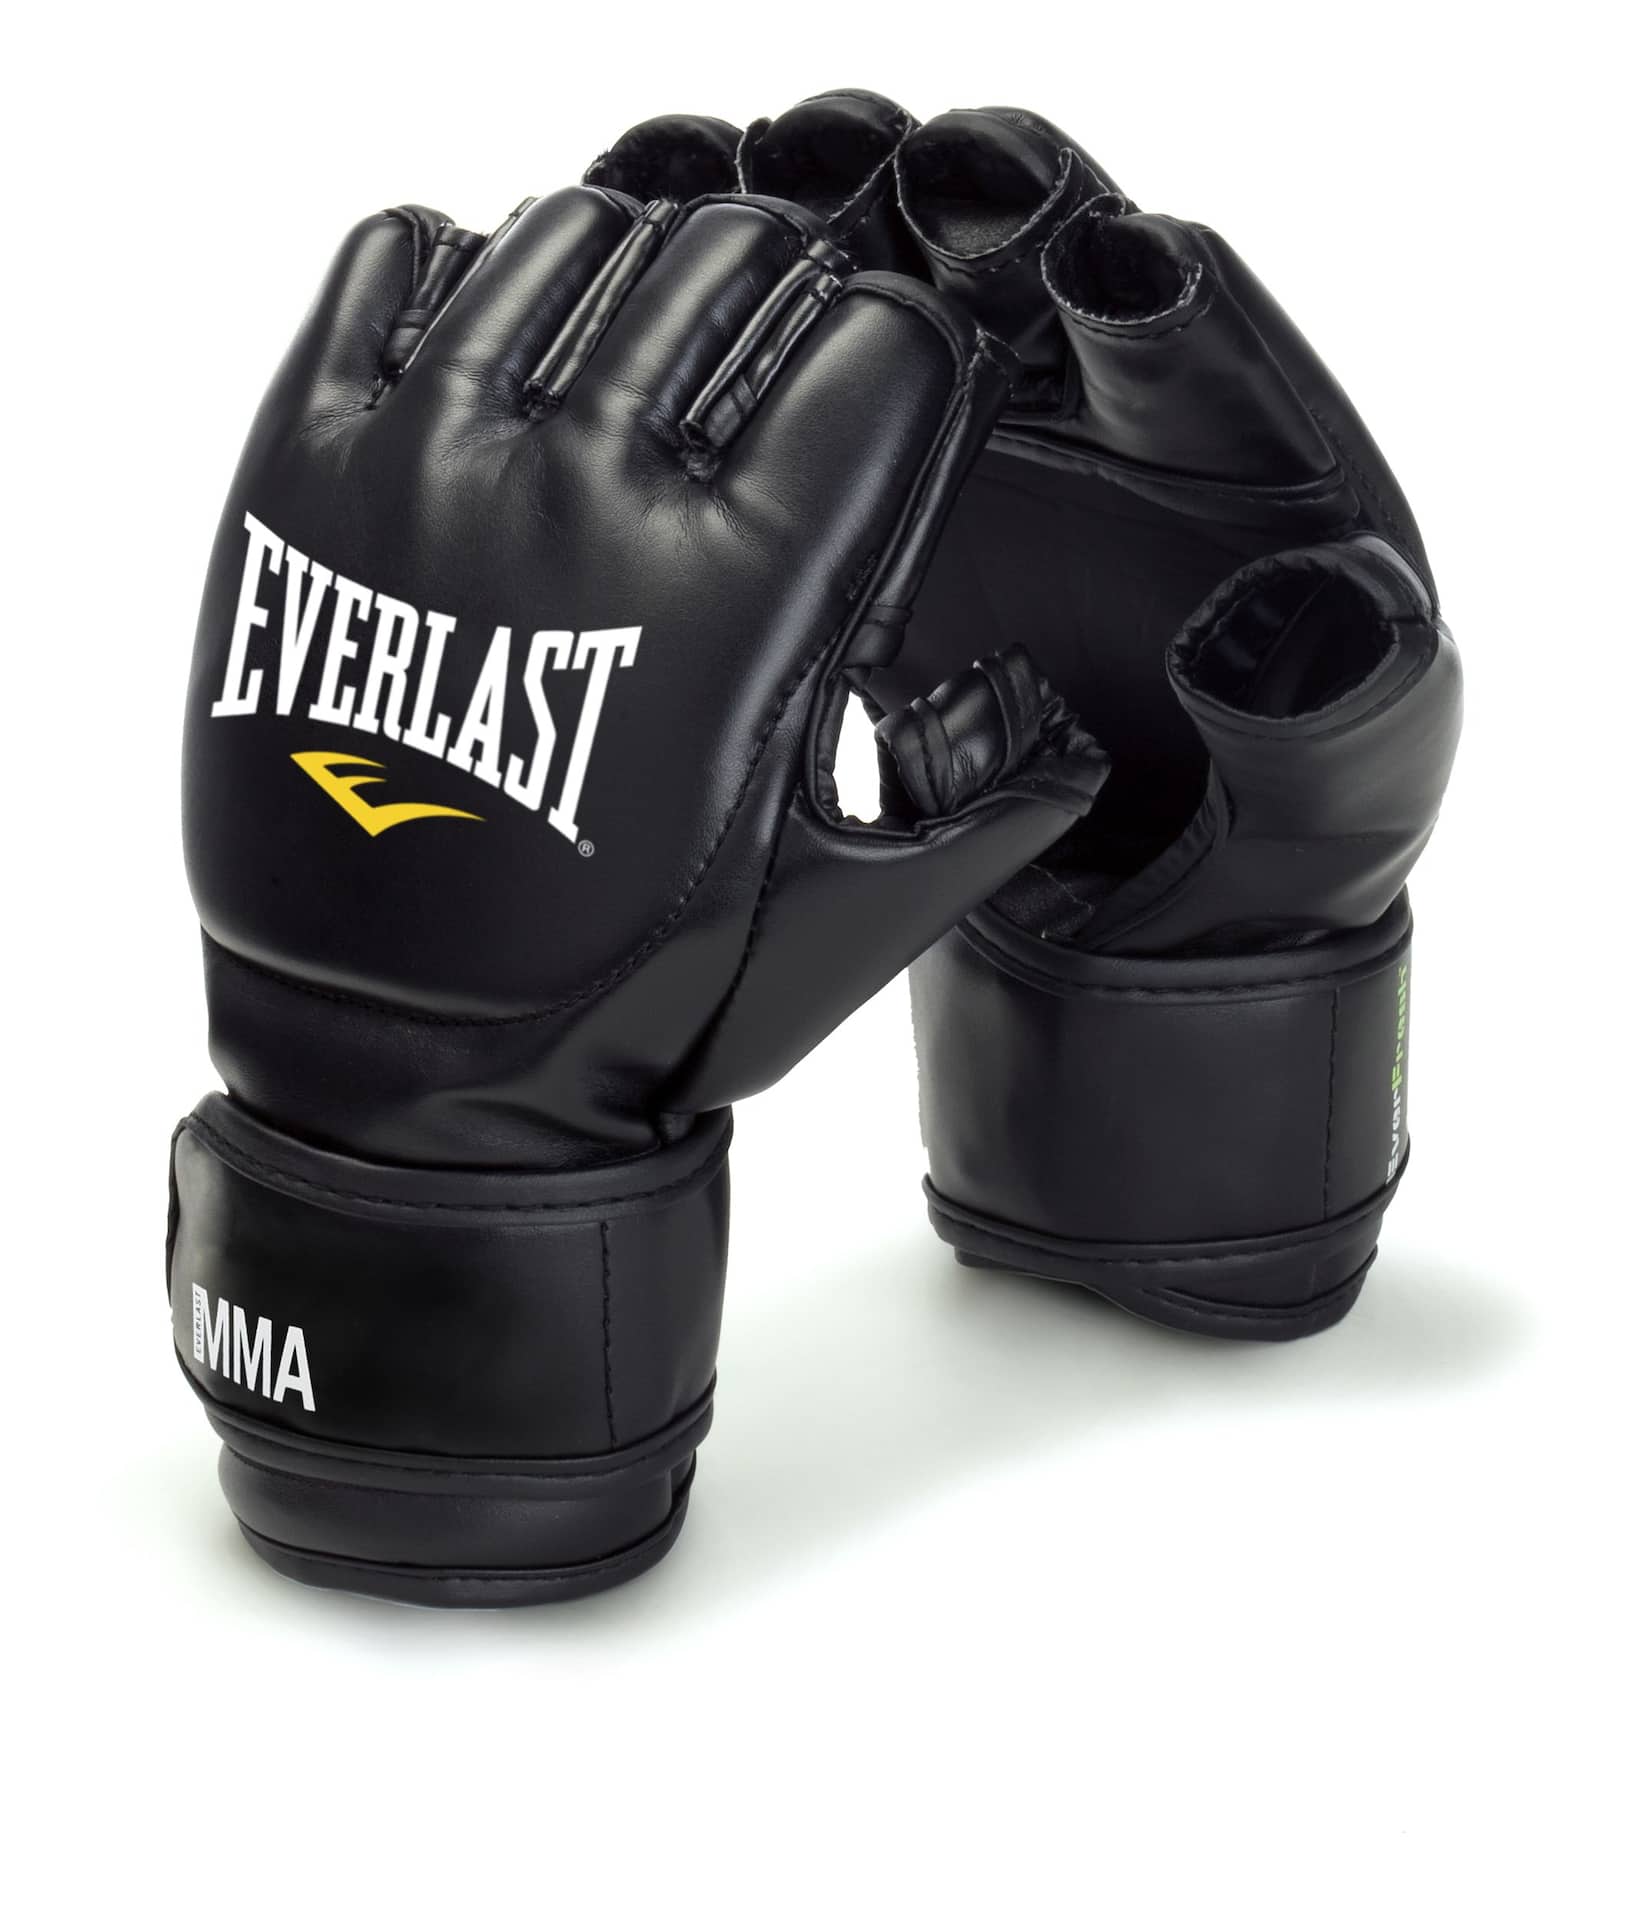 Everlast MMA Grappling Boxing Gloves, Black, Small/Medium